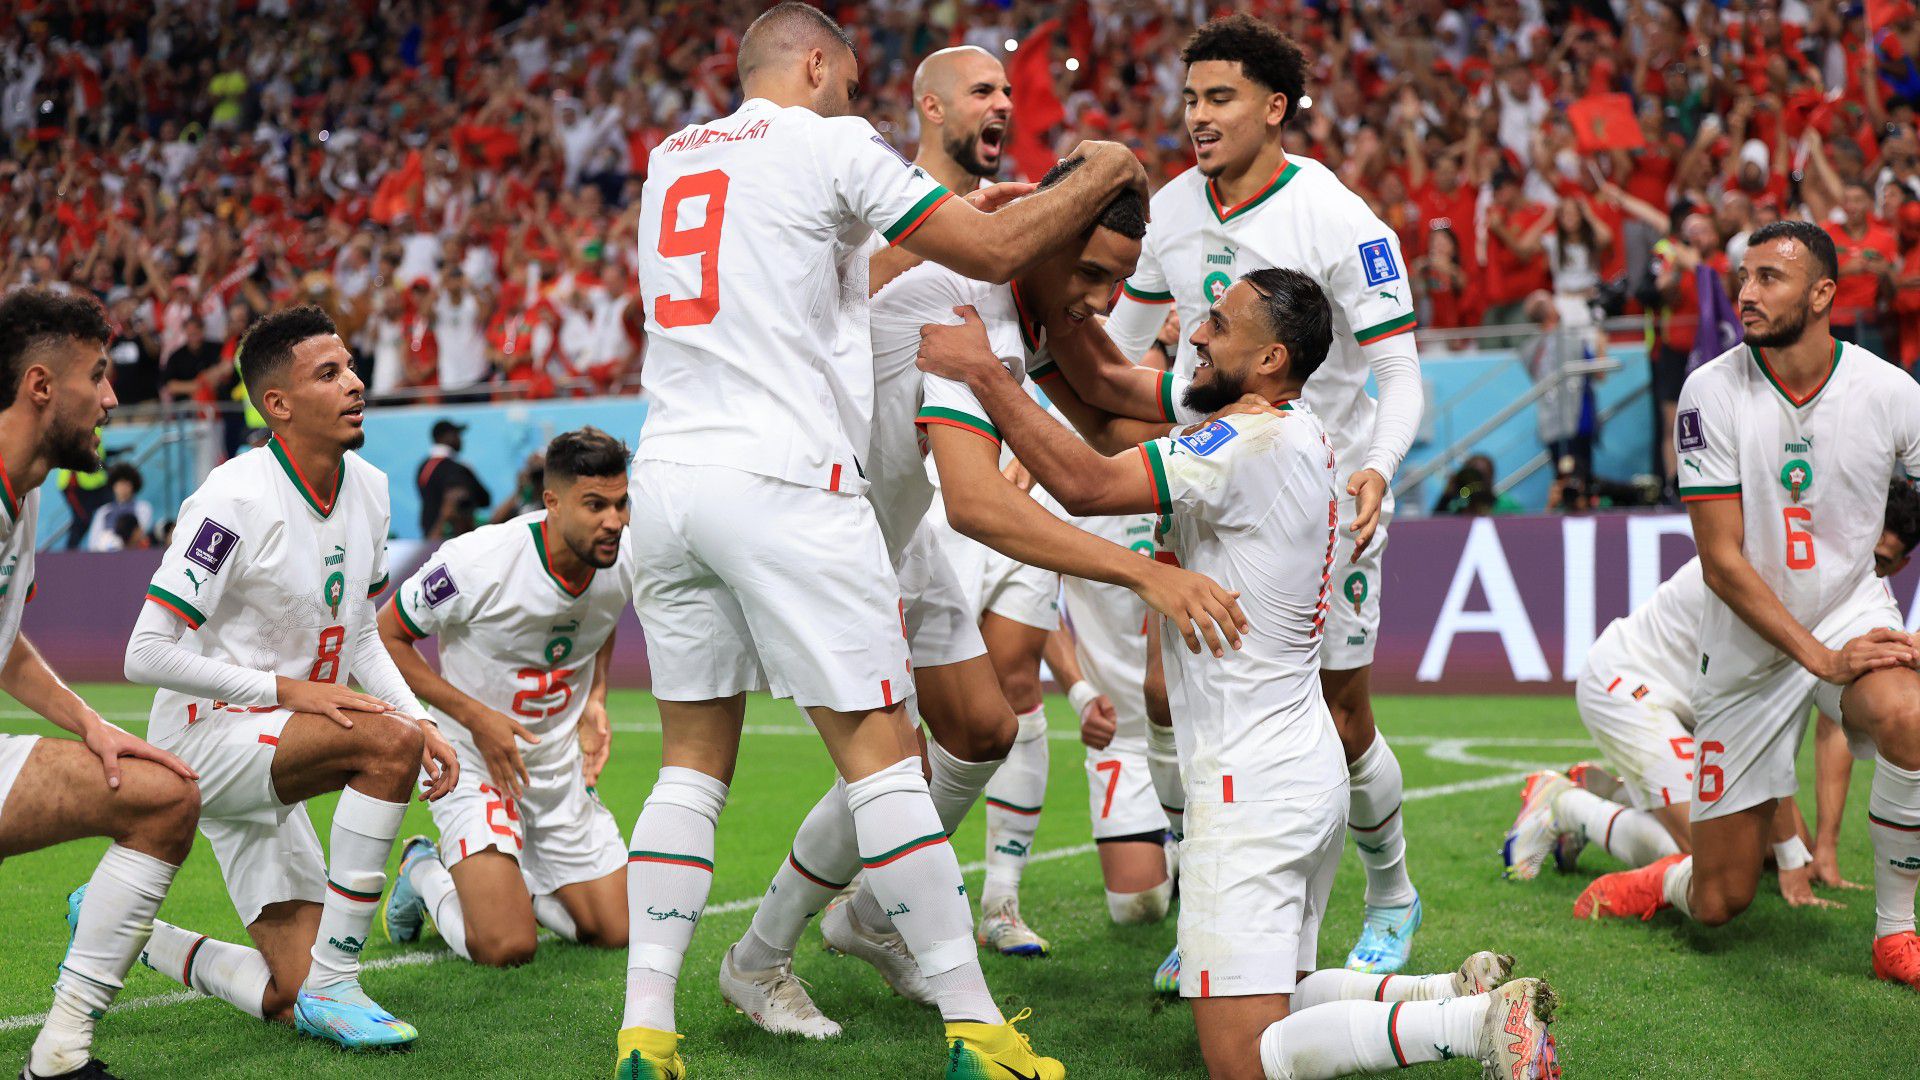 VÉGE: Marokkó két góllal legyőzte Belgiumot